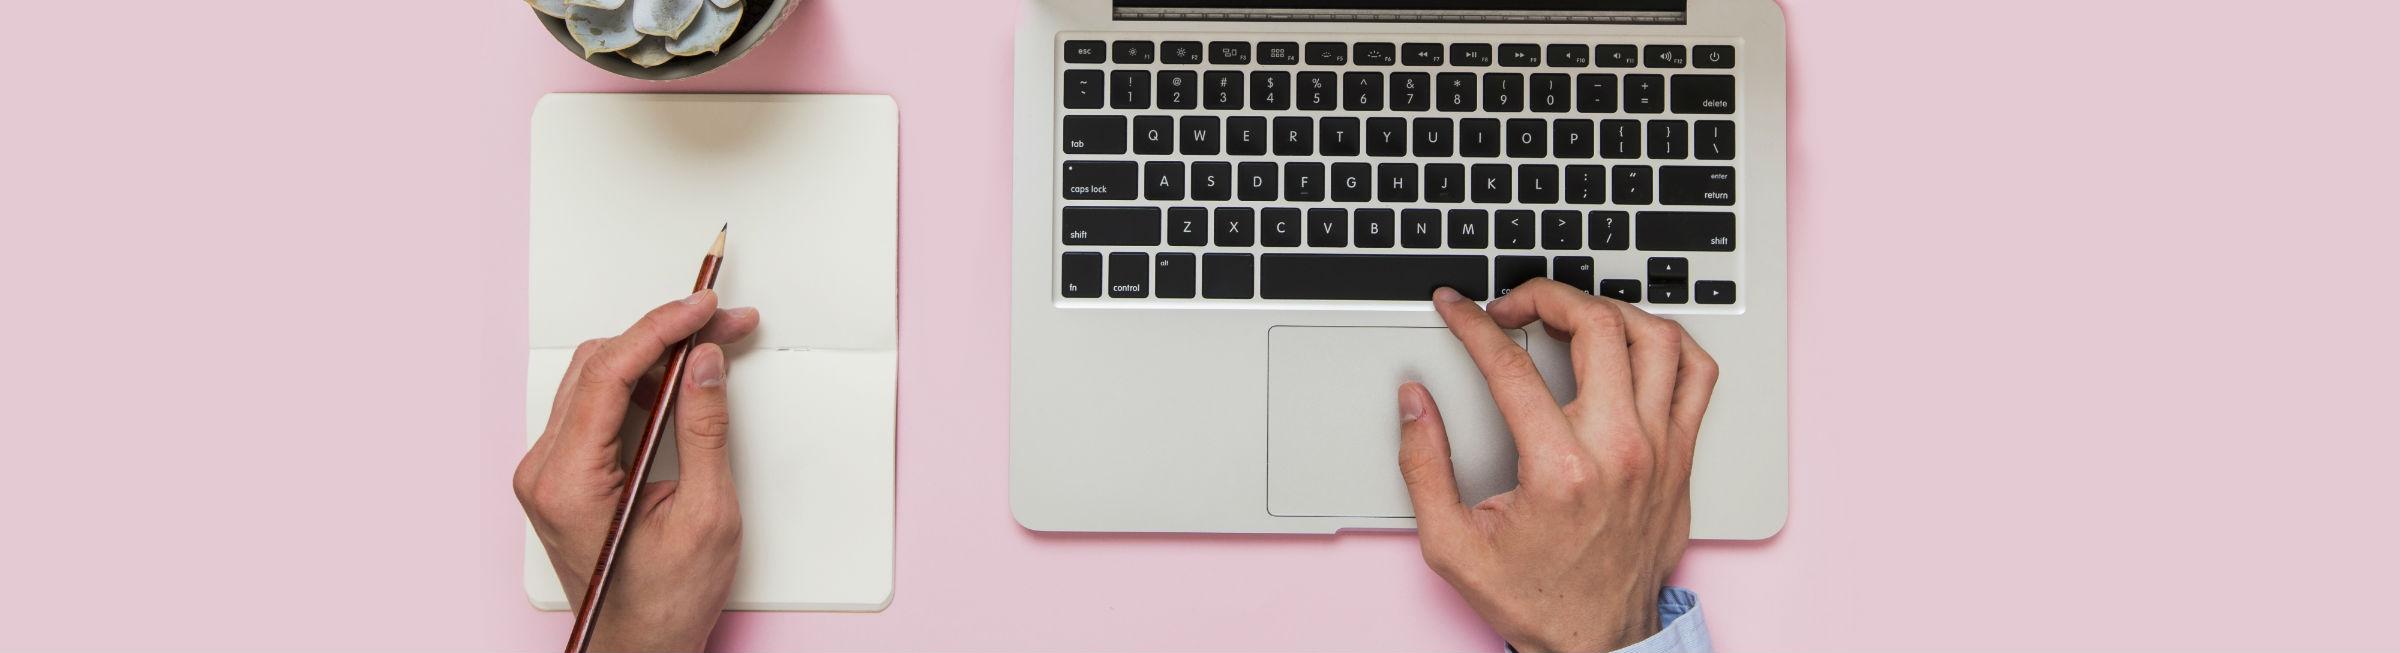 Une personne écrit de la main gauche sur un calepin et navigue sur son ordinateur portable avec sa main droite 